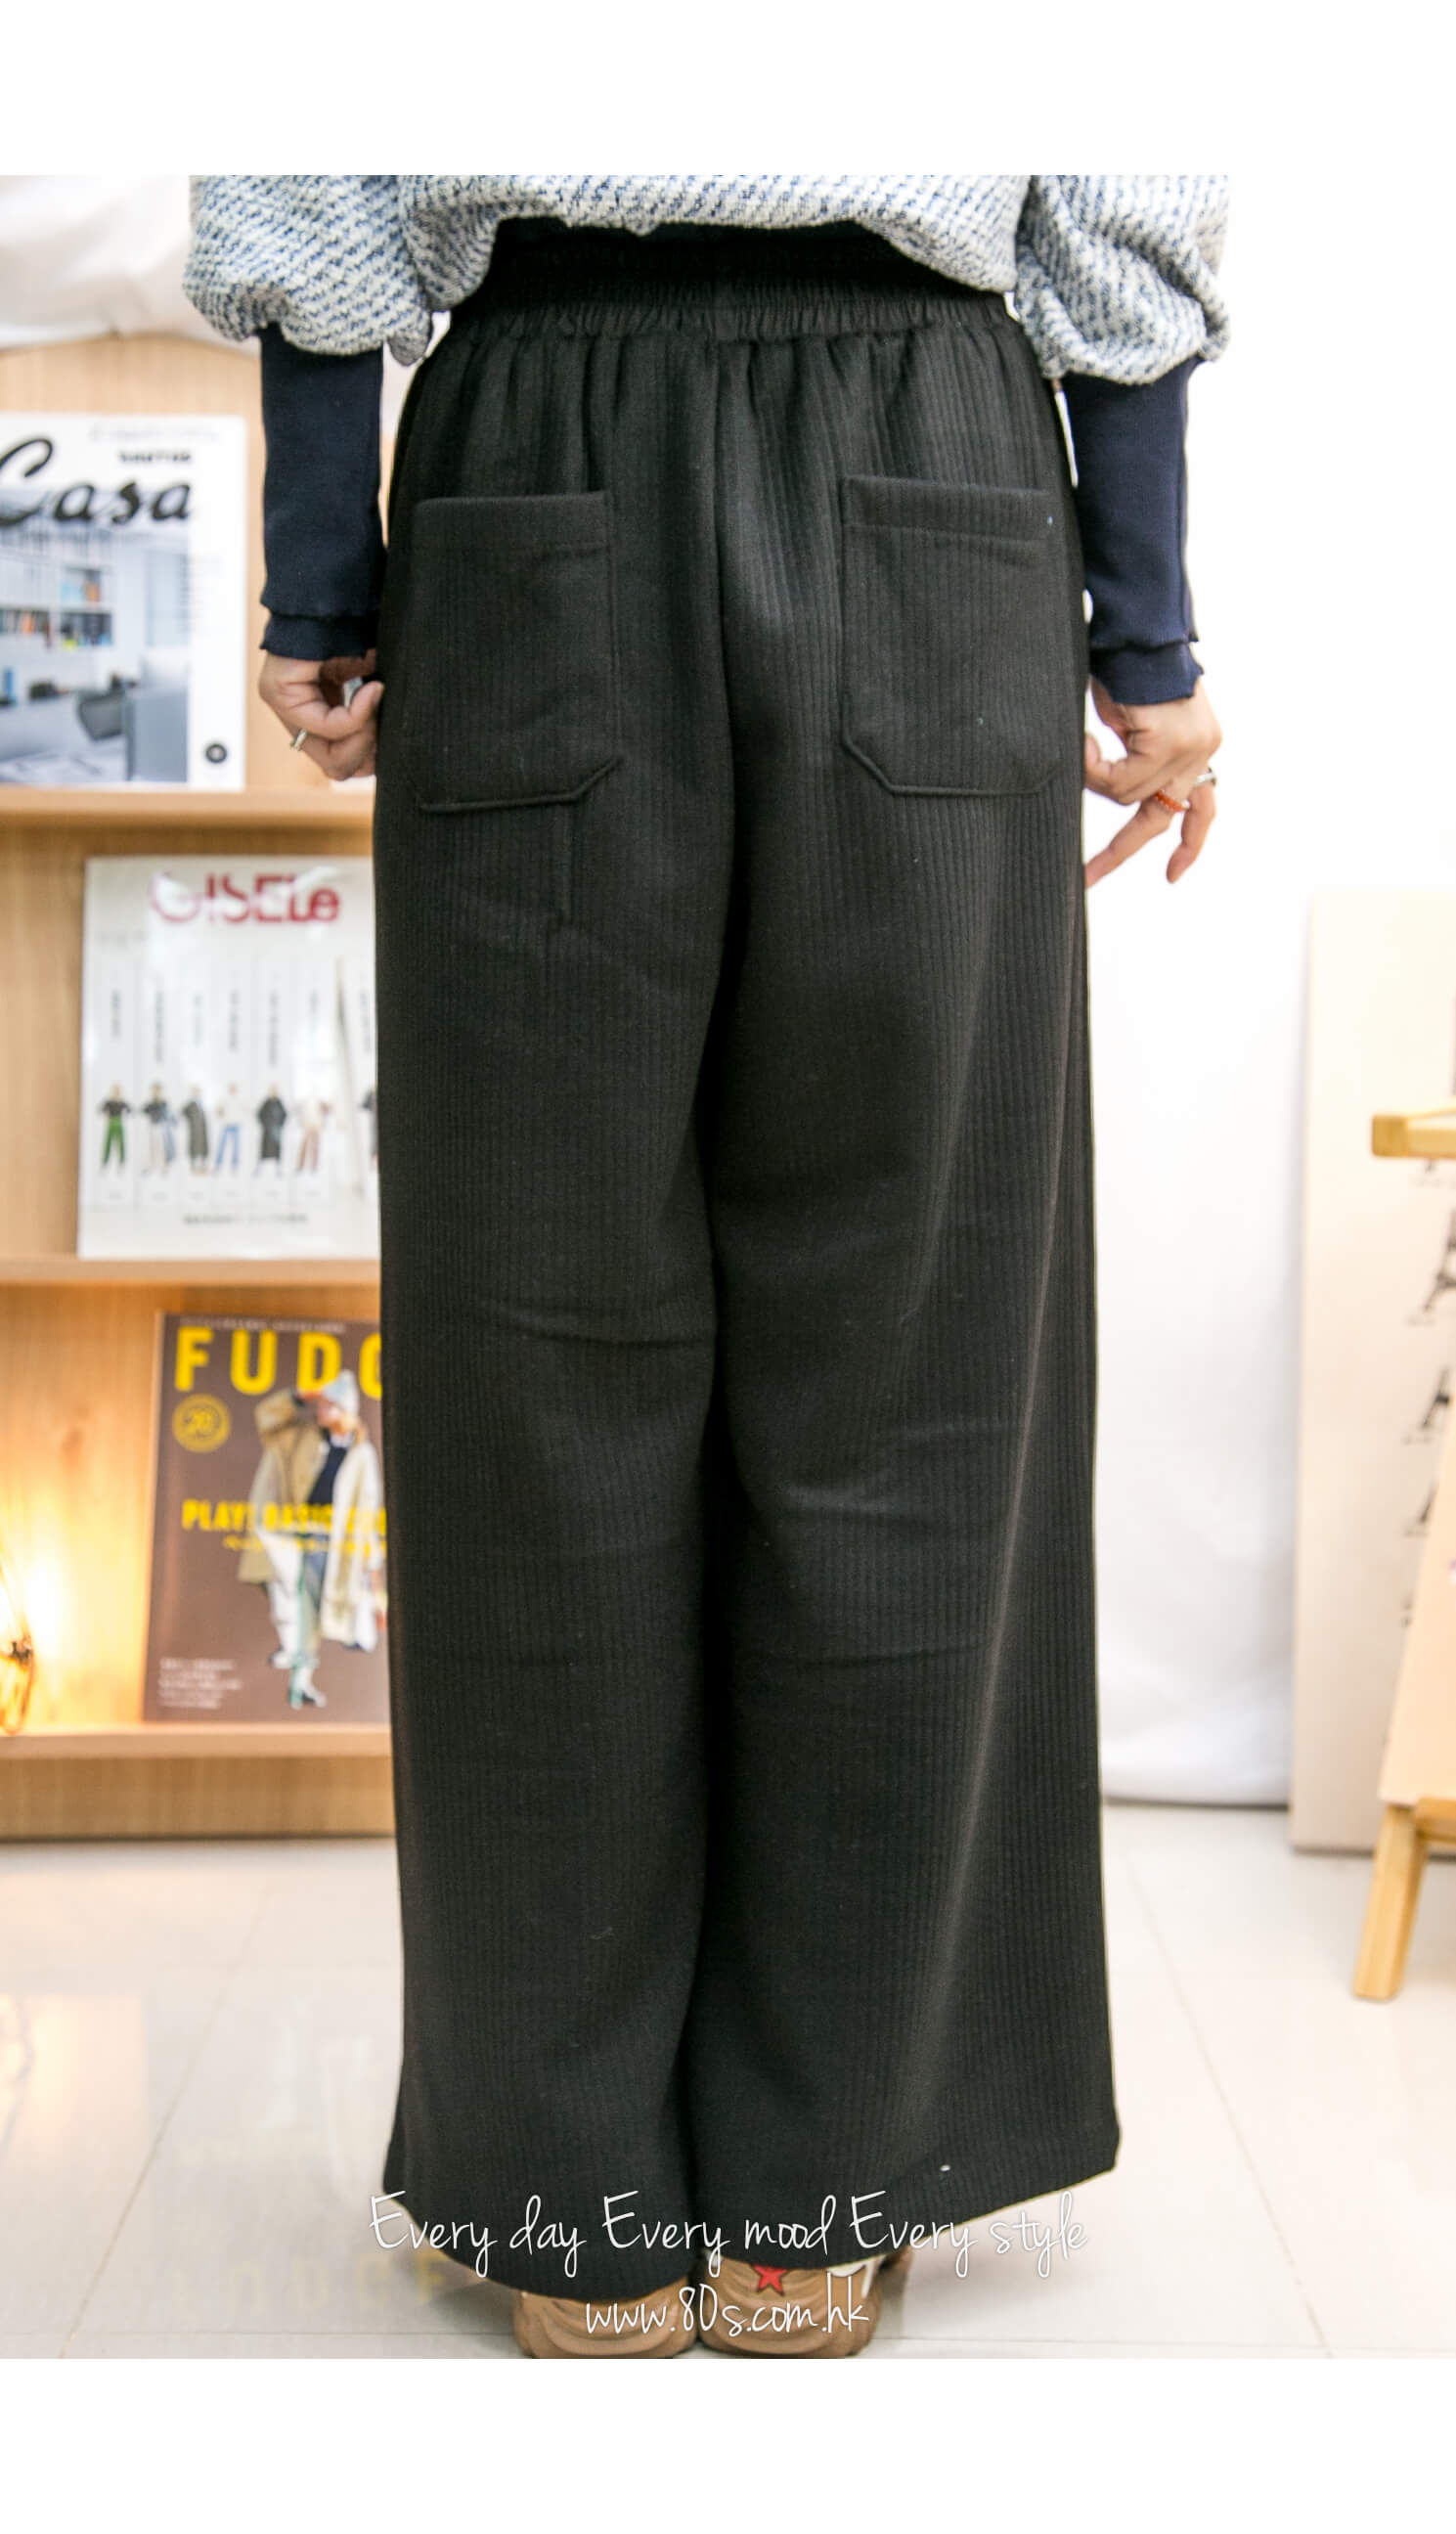 2215-1203- 隨意感 - 橡根腰束繩 ‧ 兩側袋 ‧ 坑紋絨絨料闊褲 (韓國)  